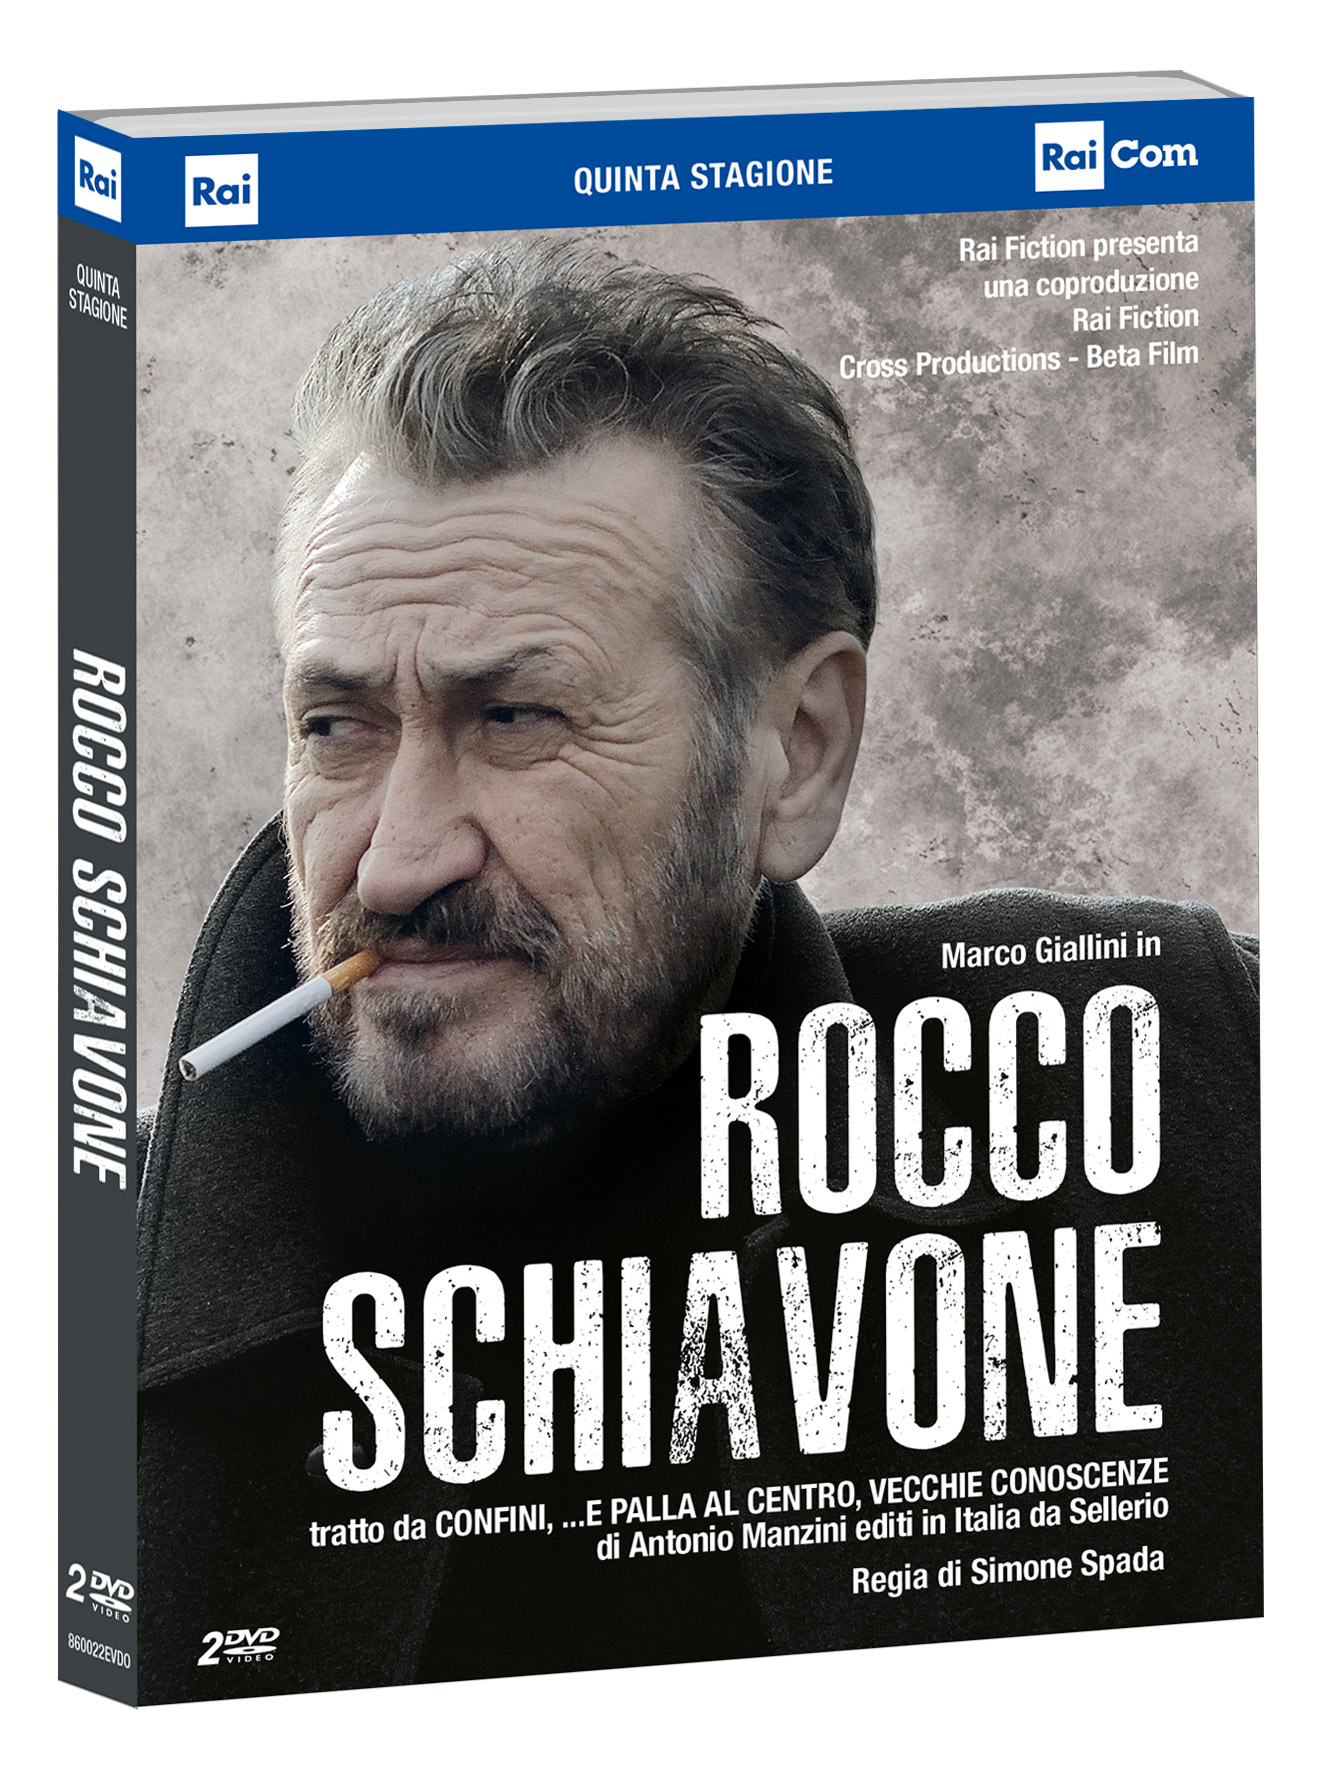 Rocco Schiavone S5 in DVD